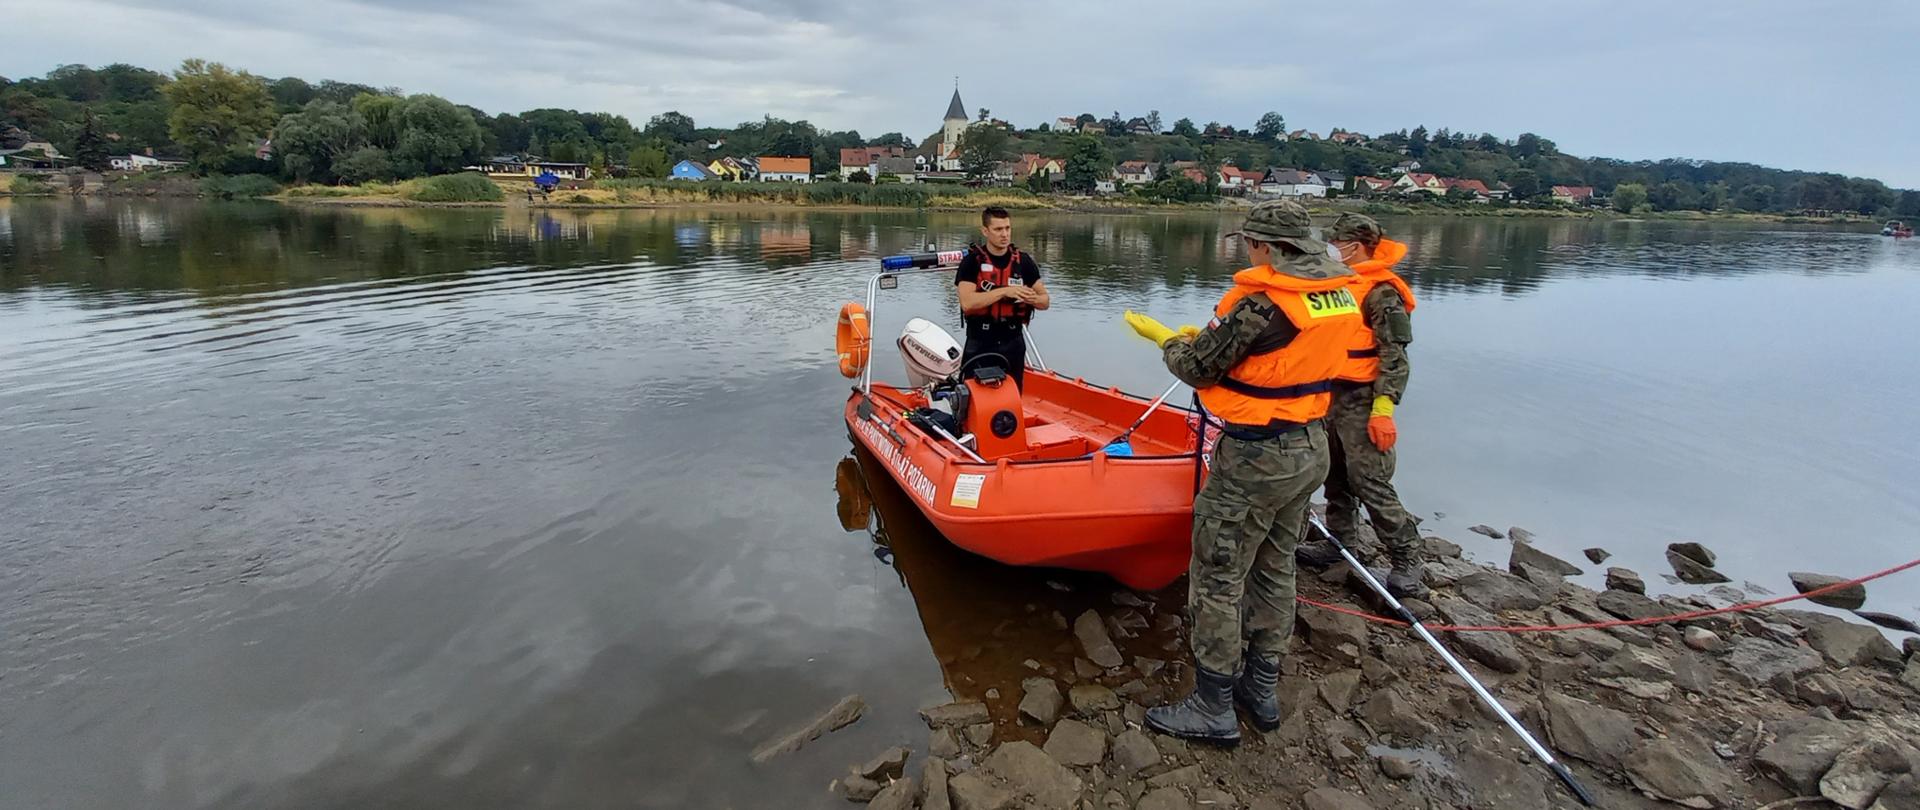 Strażak w kapoku w łódce na brzegu rzeki. Przed łodzią stojący dwaj żołnierze ubrani w kapoki.